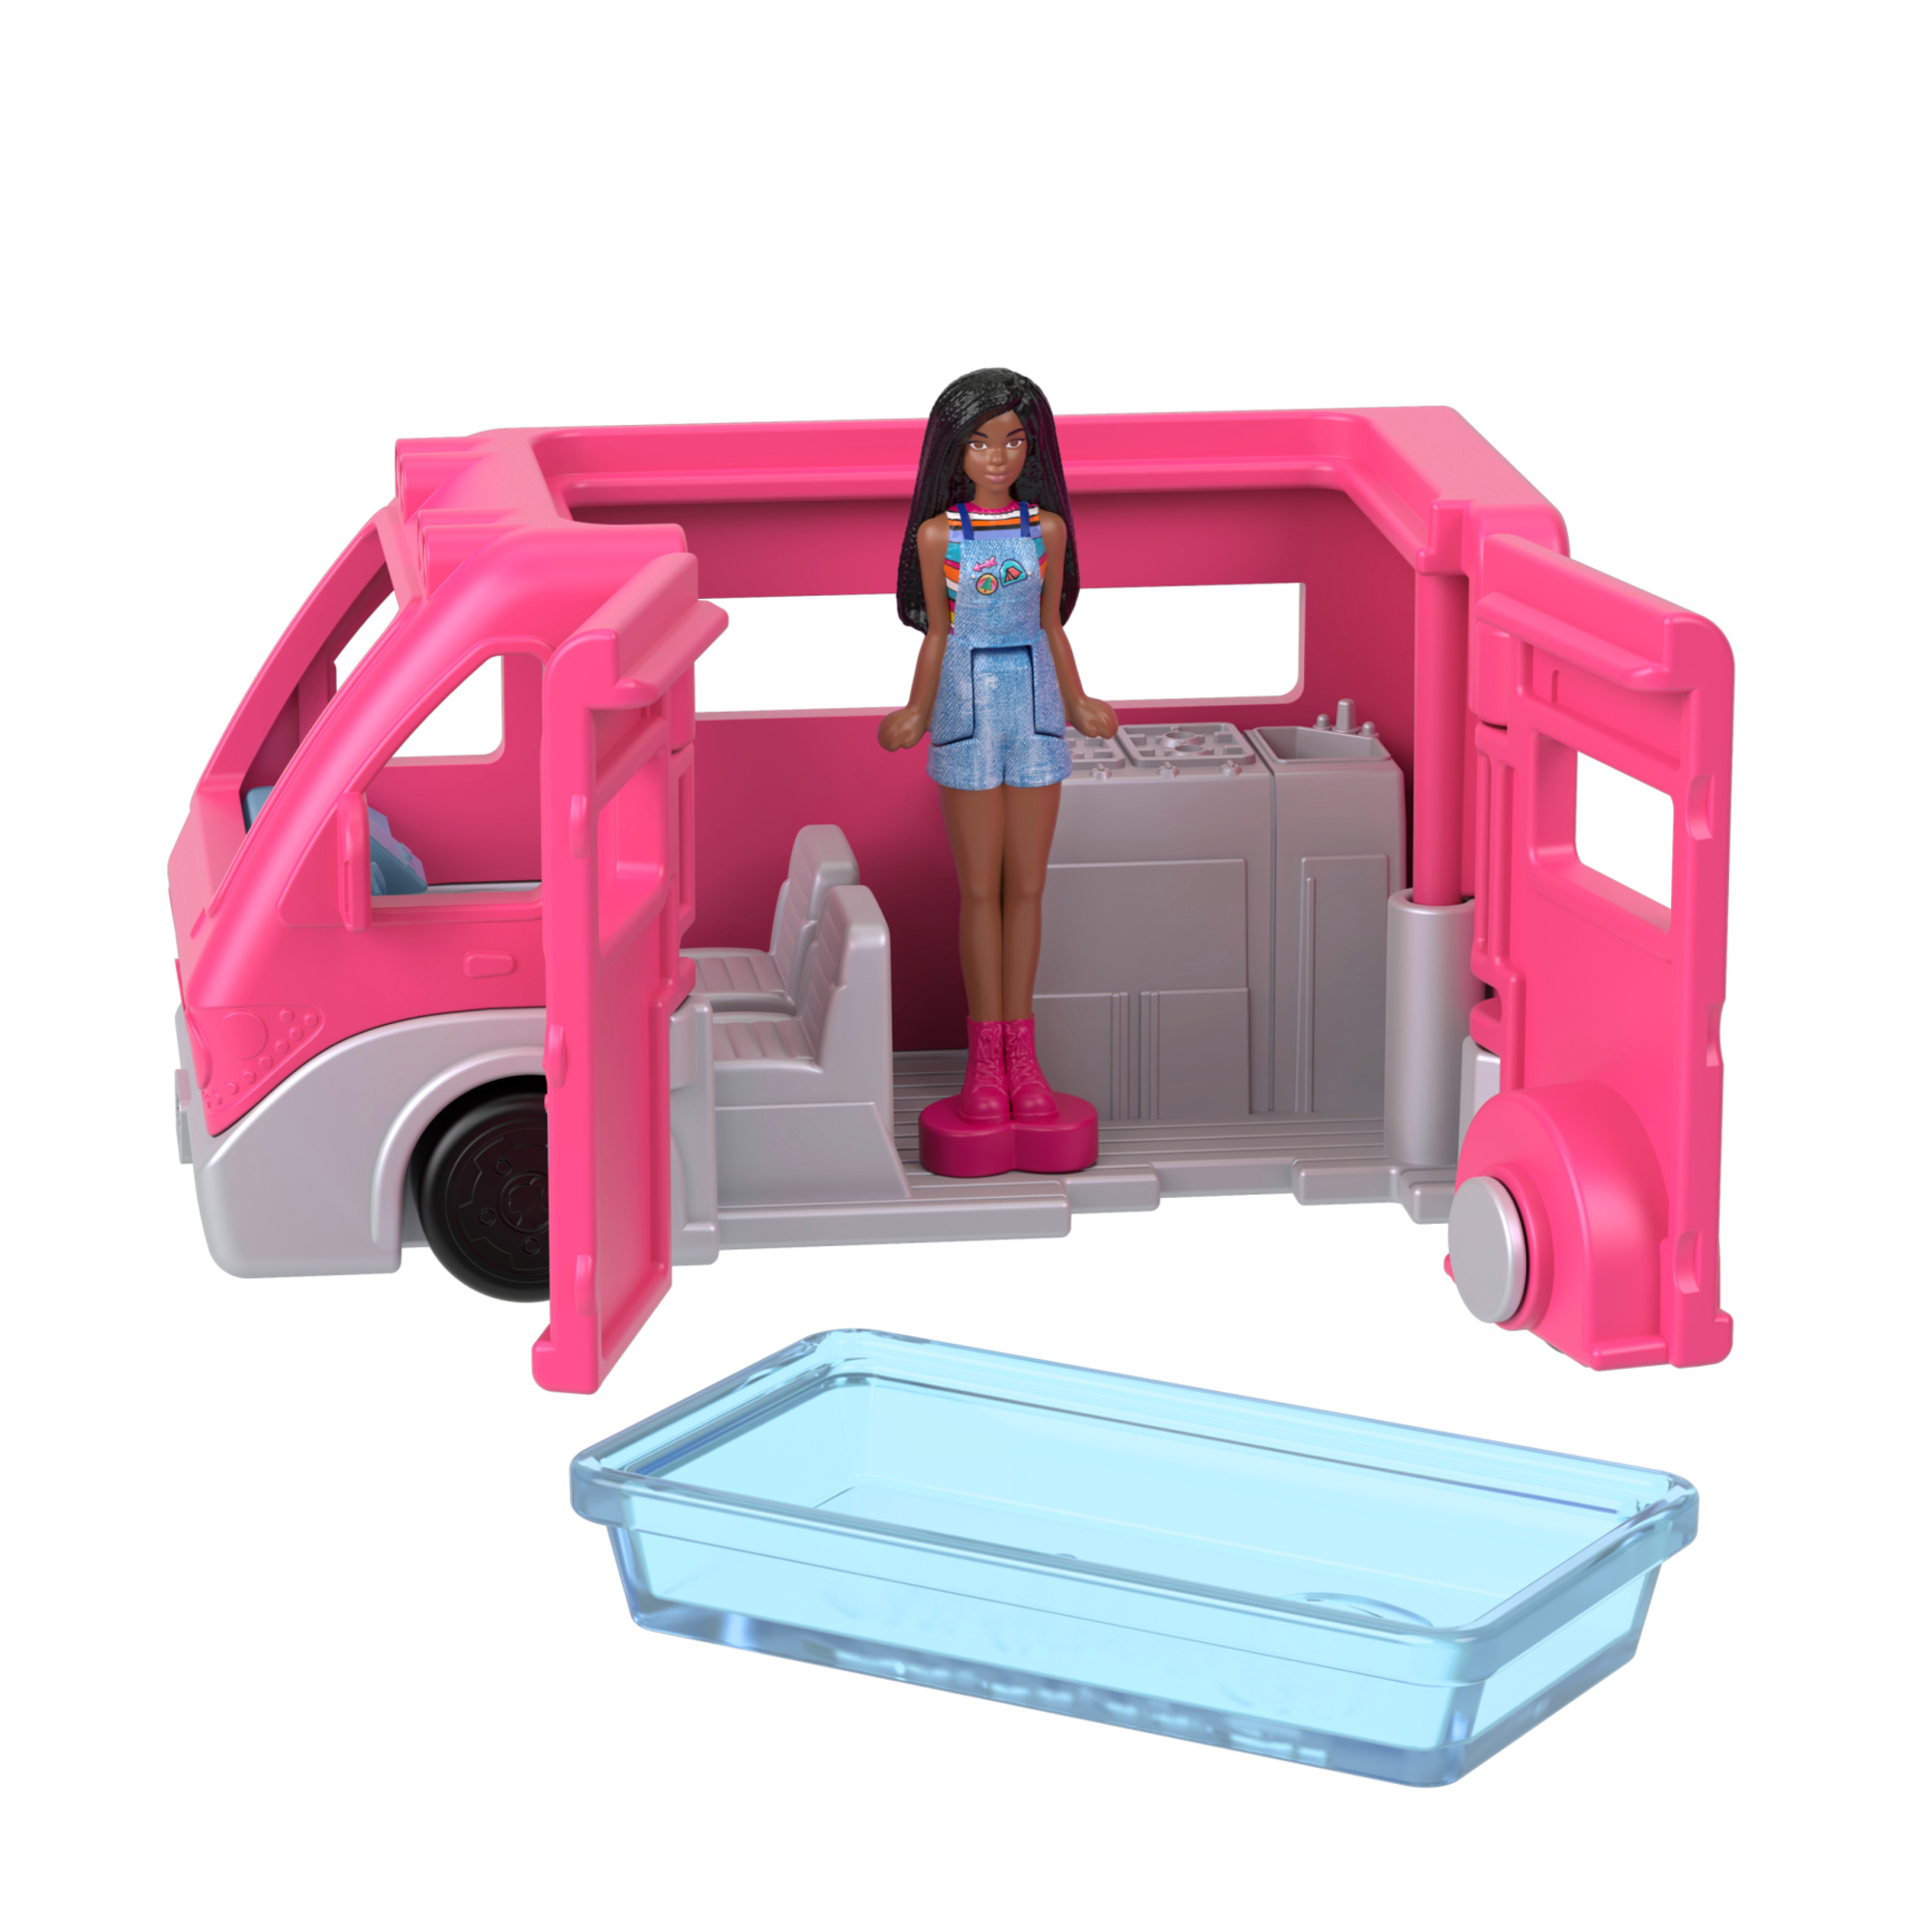 Mini barbieland - camper dei sogn - set con mini veicolo e bambola con sorpresa cambia colore in acqua - Barbie